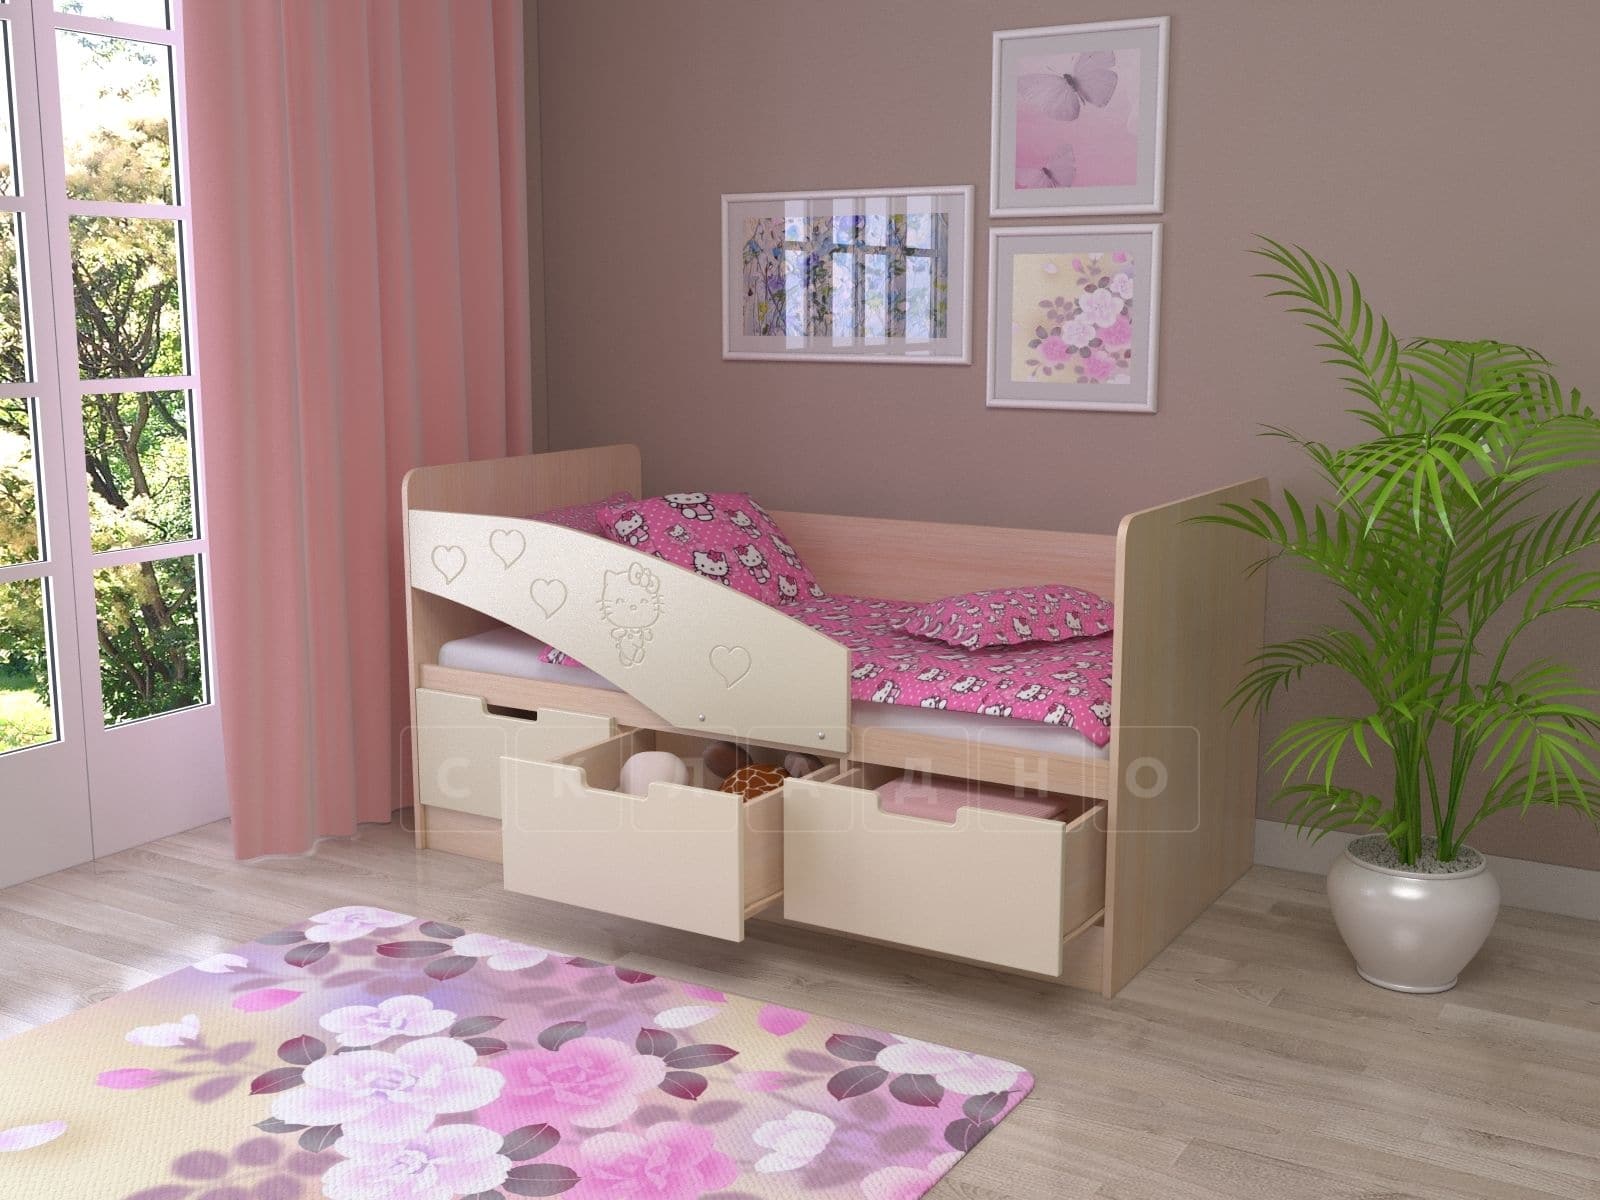 Детская кровать Бемби-7 Hello Kitty 1,6 м фото | интернет-магазин Складно